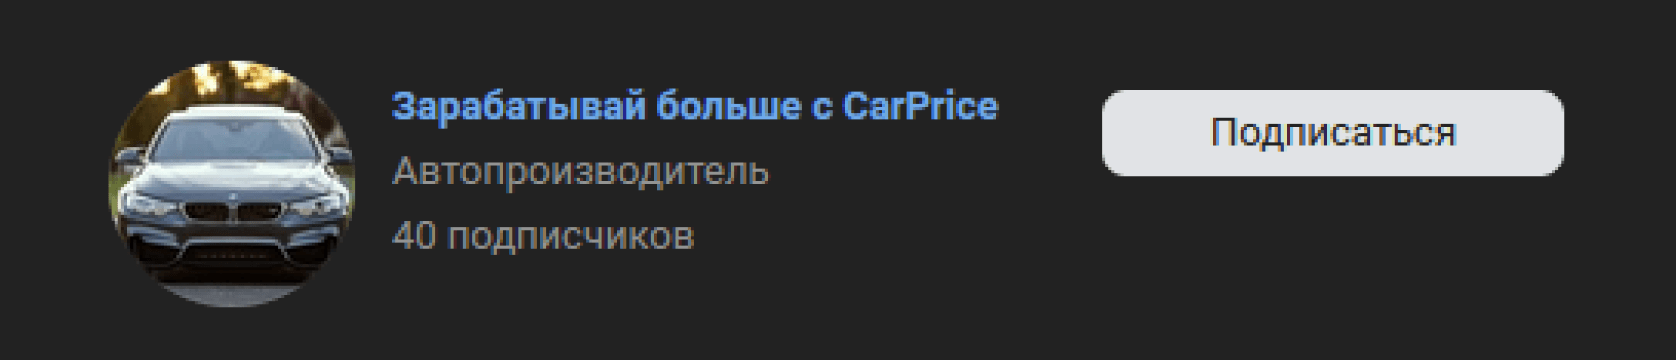 Сообщество ВКонтакте, которое незаконно использует имя бренда CarPrice